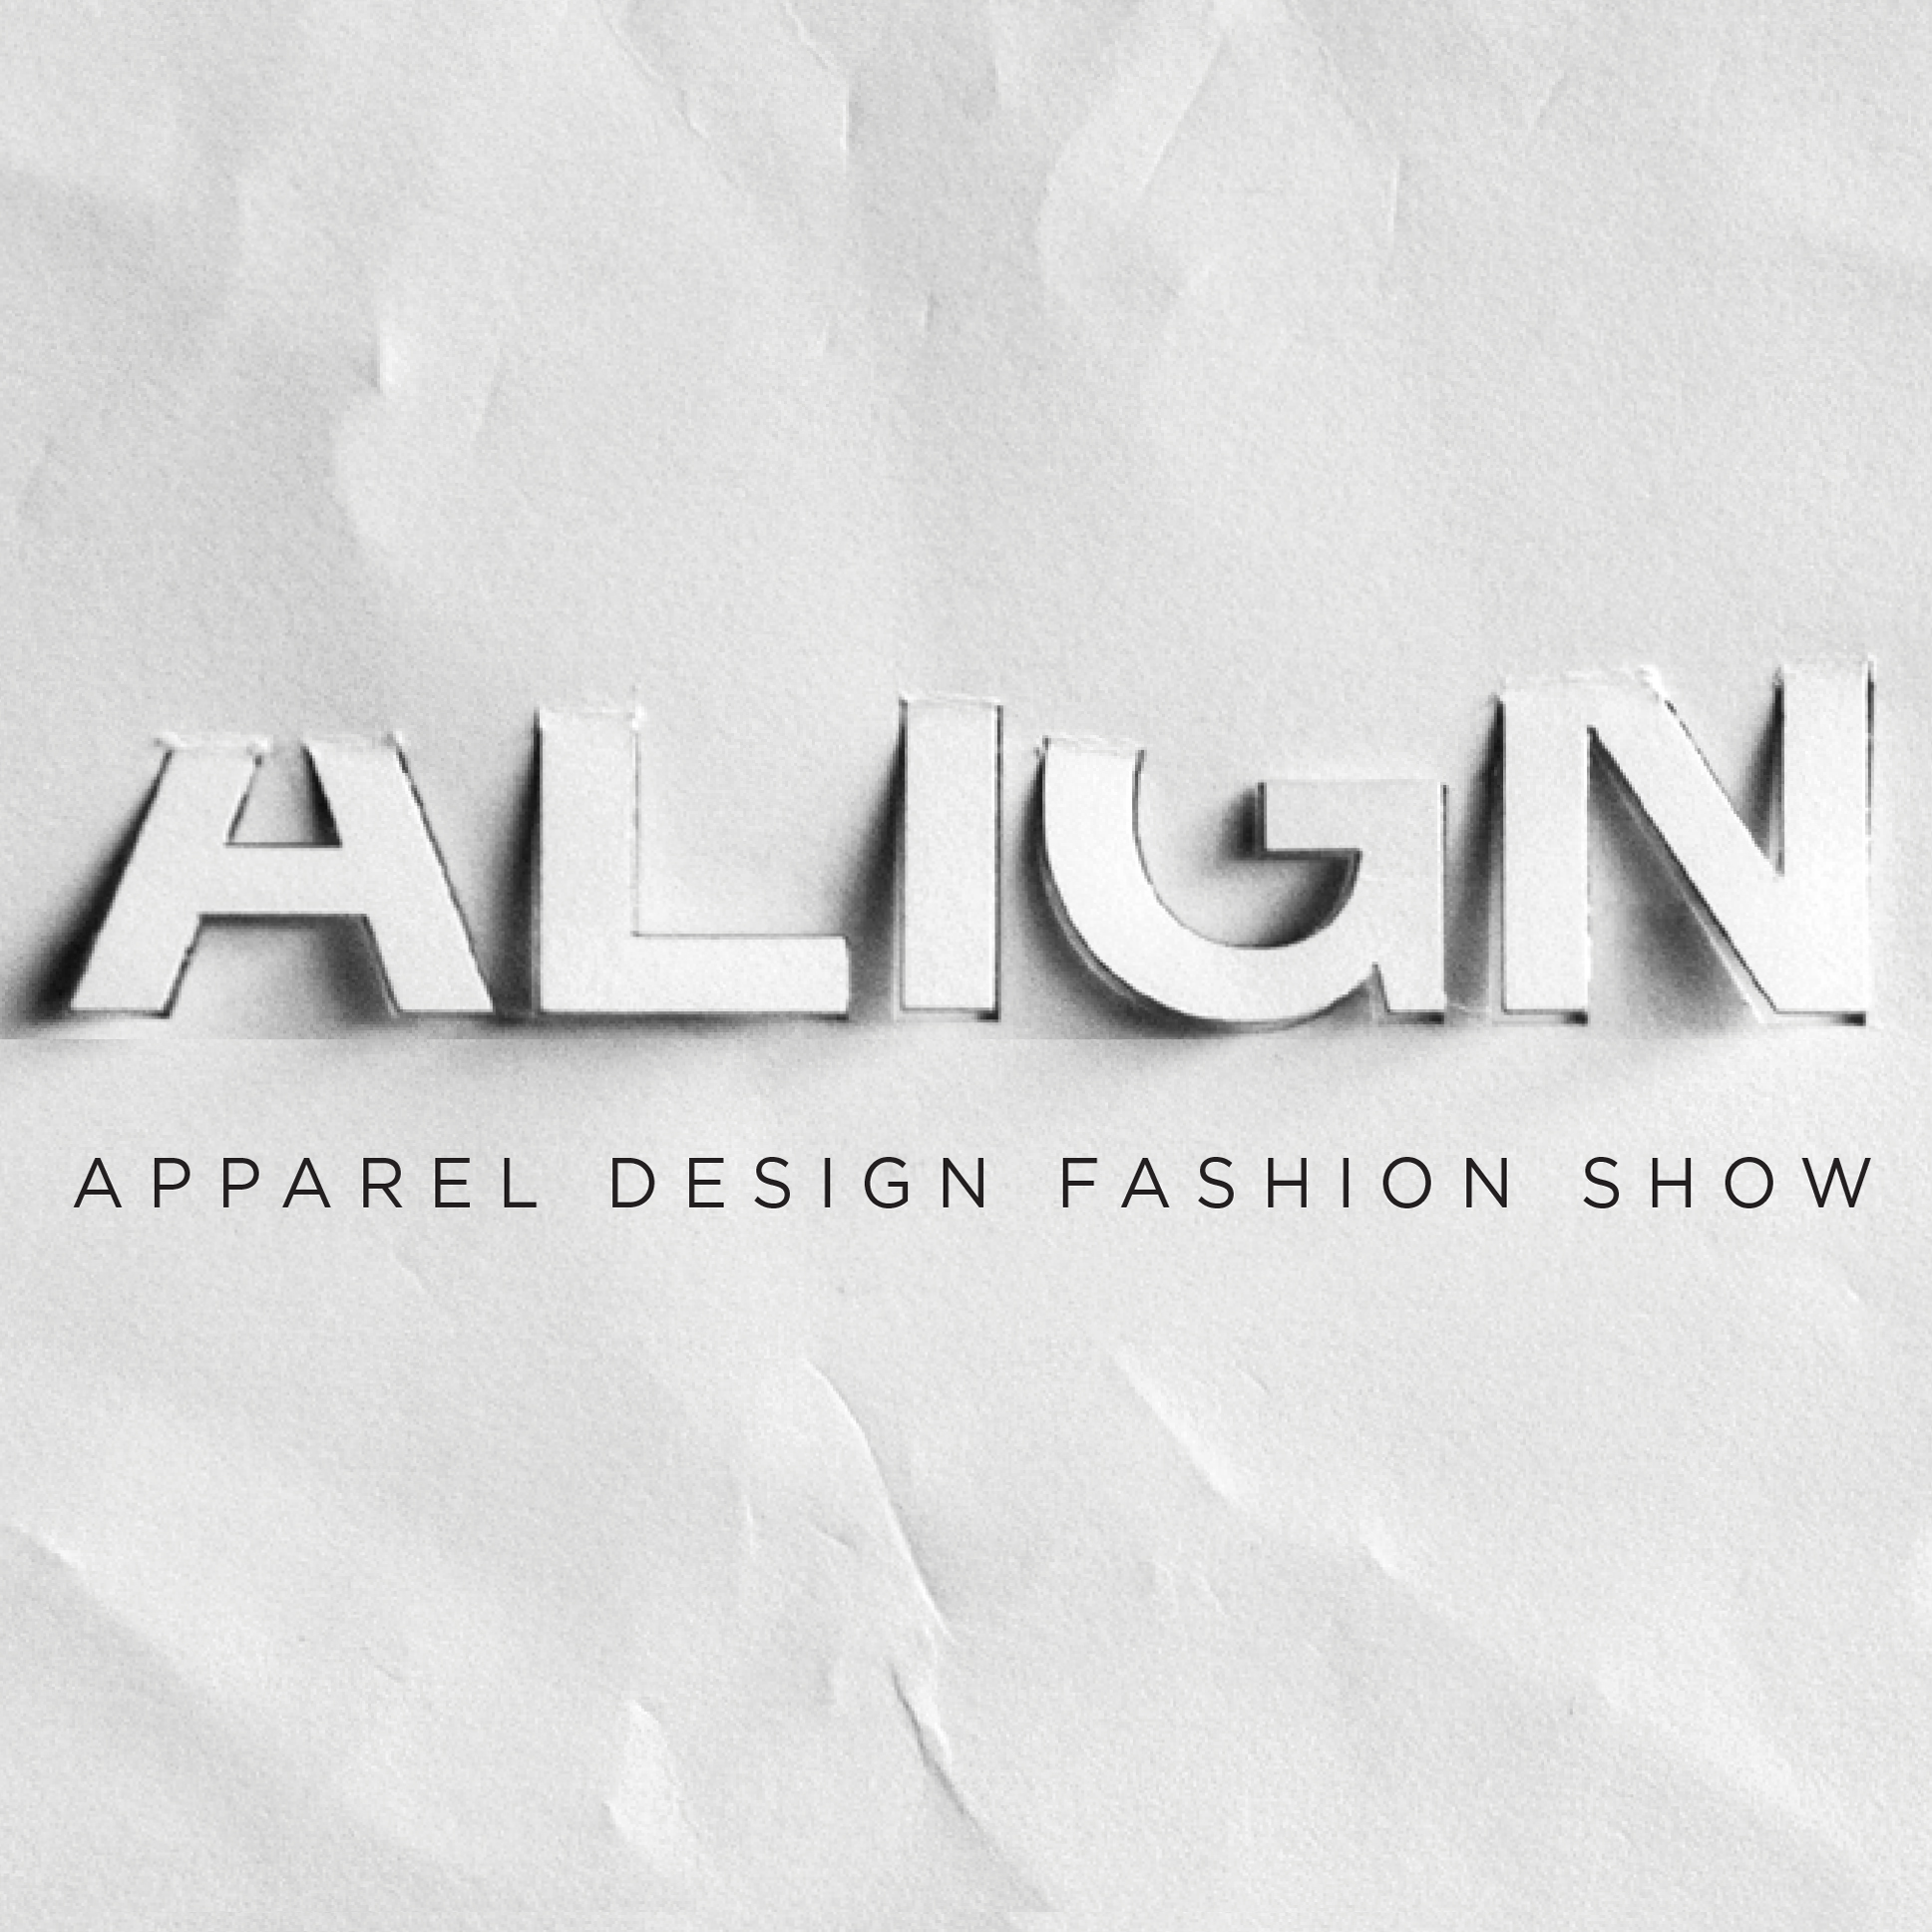 Align Apparel Design Fashion Show 2014